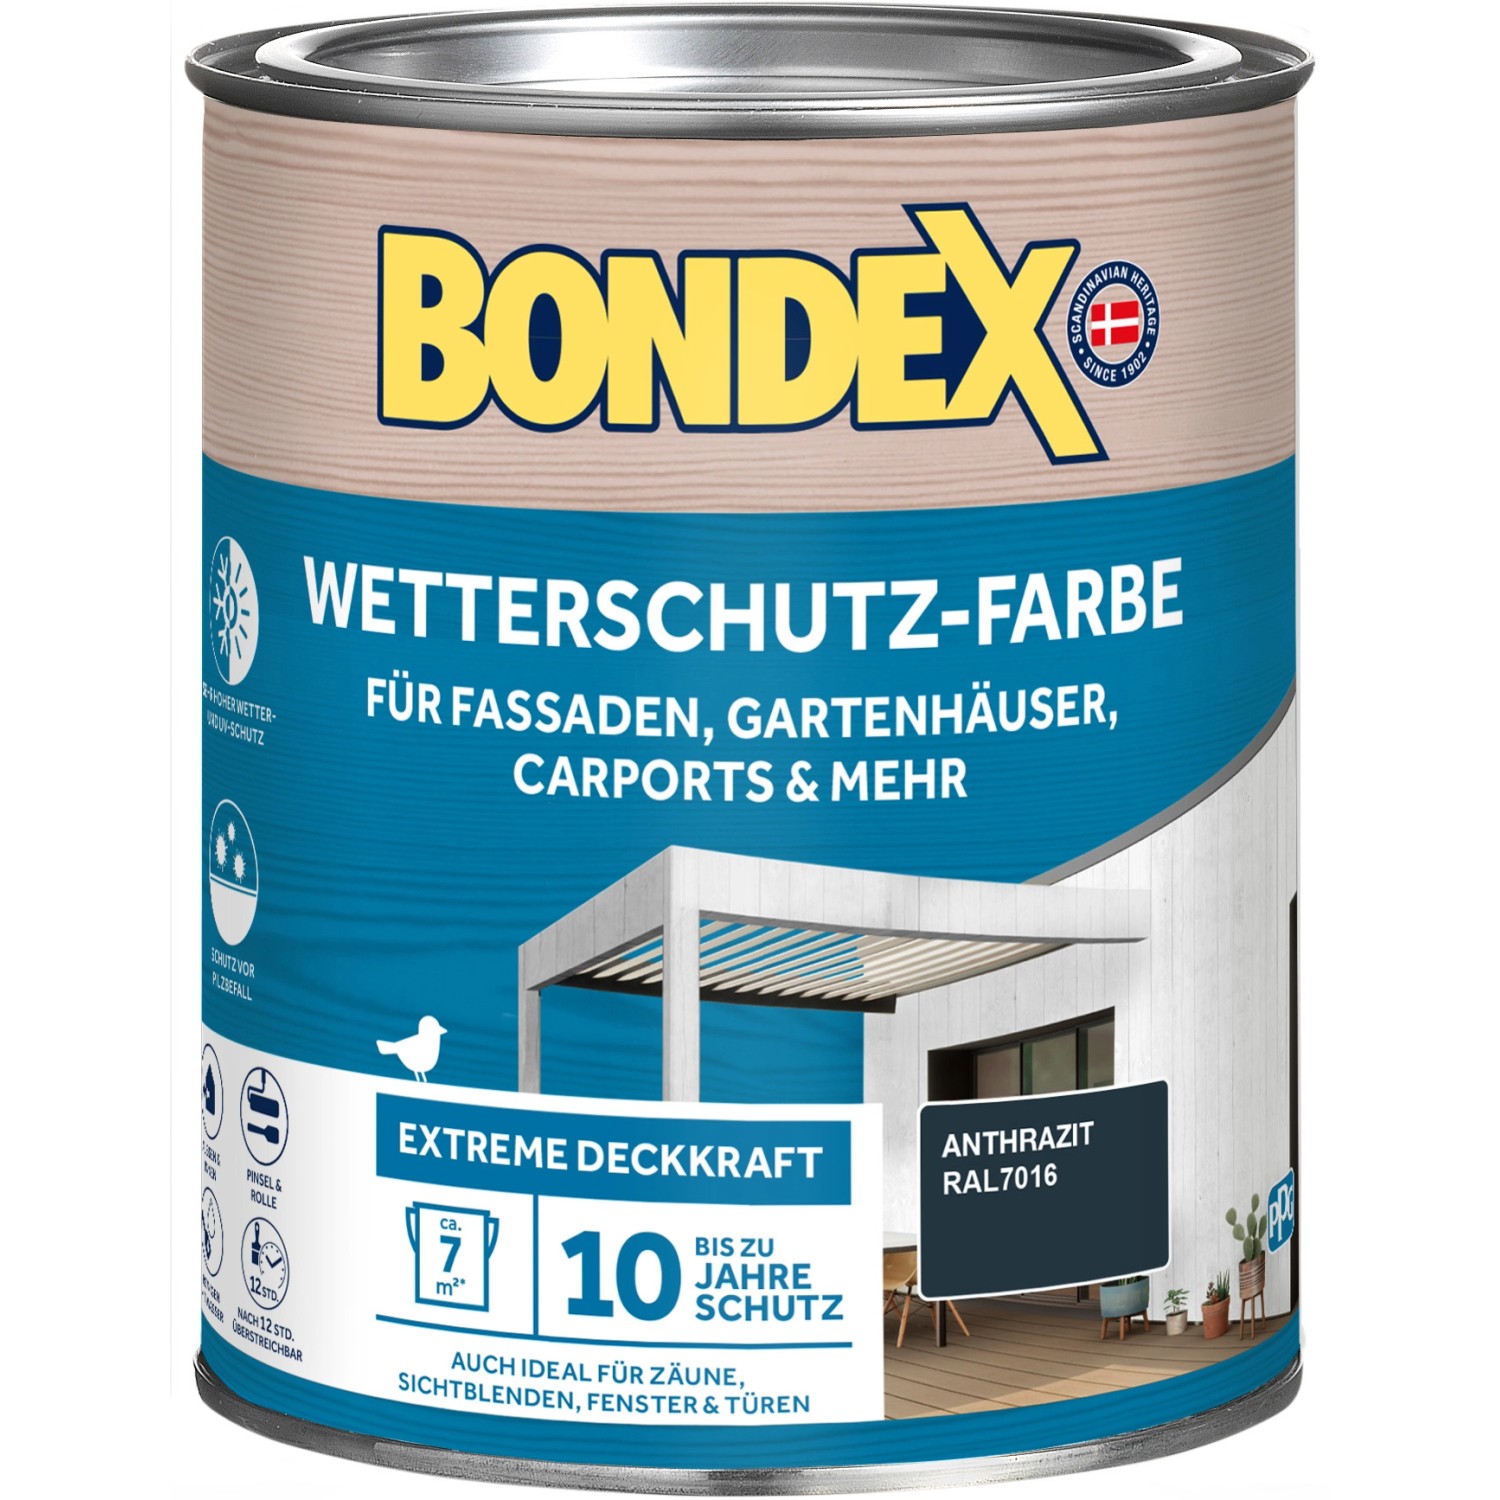 Bondex Wetterschutz-Farbe RAL 7016 Anthrazit 750 ml von Bondex